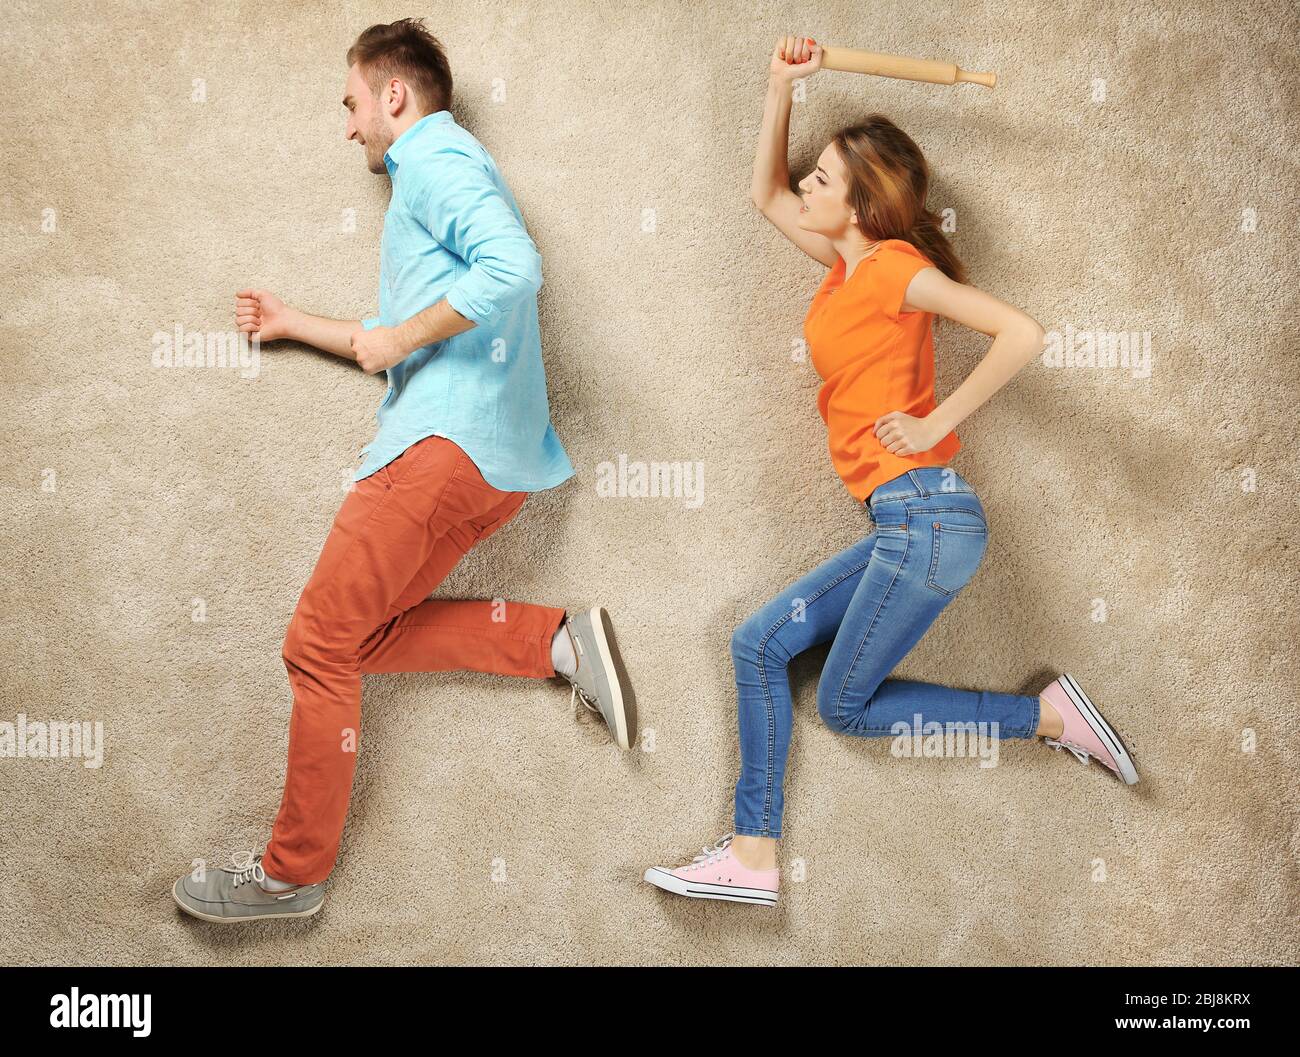 Simulation de scène, femme rattrapant avec l'homme et essayant de le battre  avec un roulement Photo Stock - Alamy